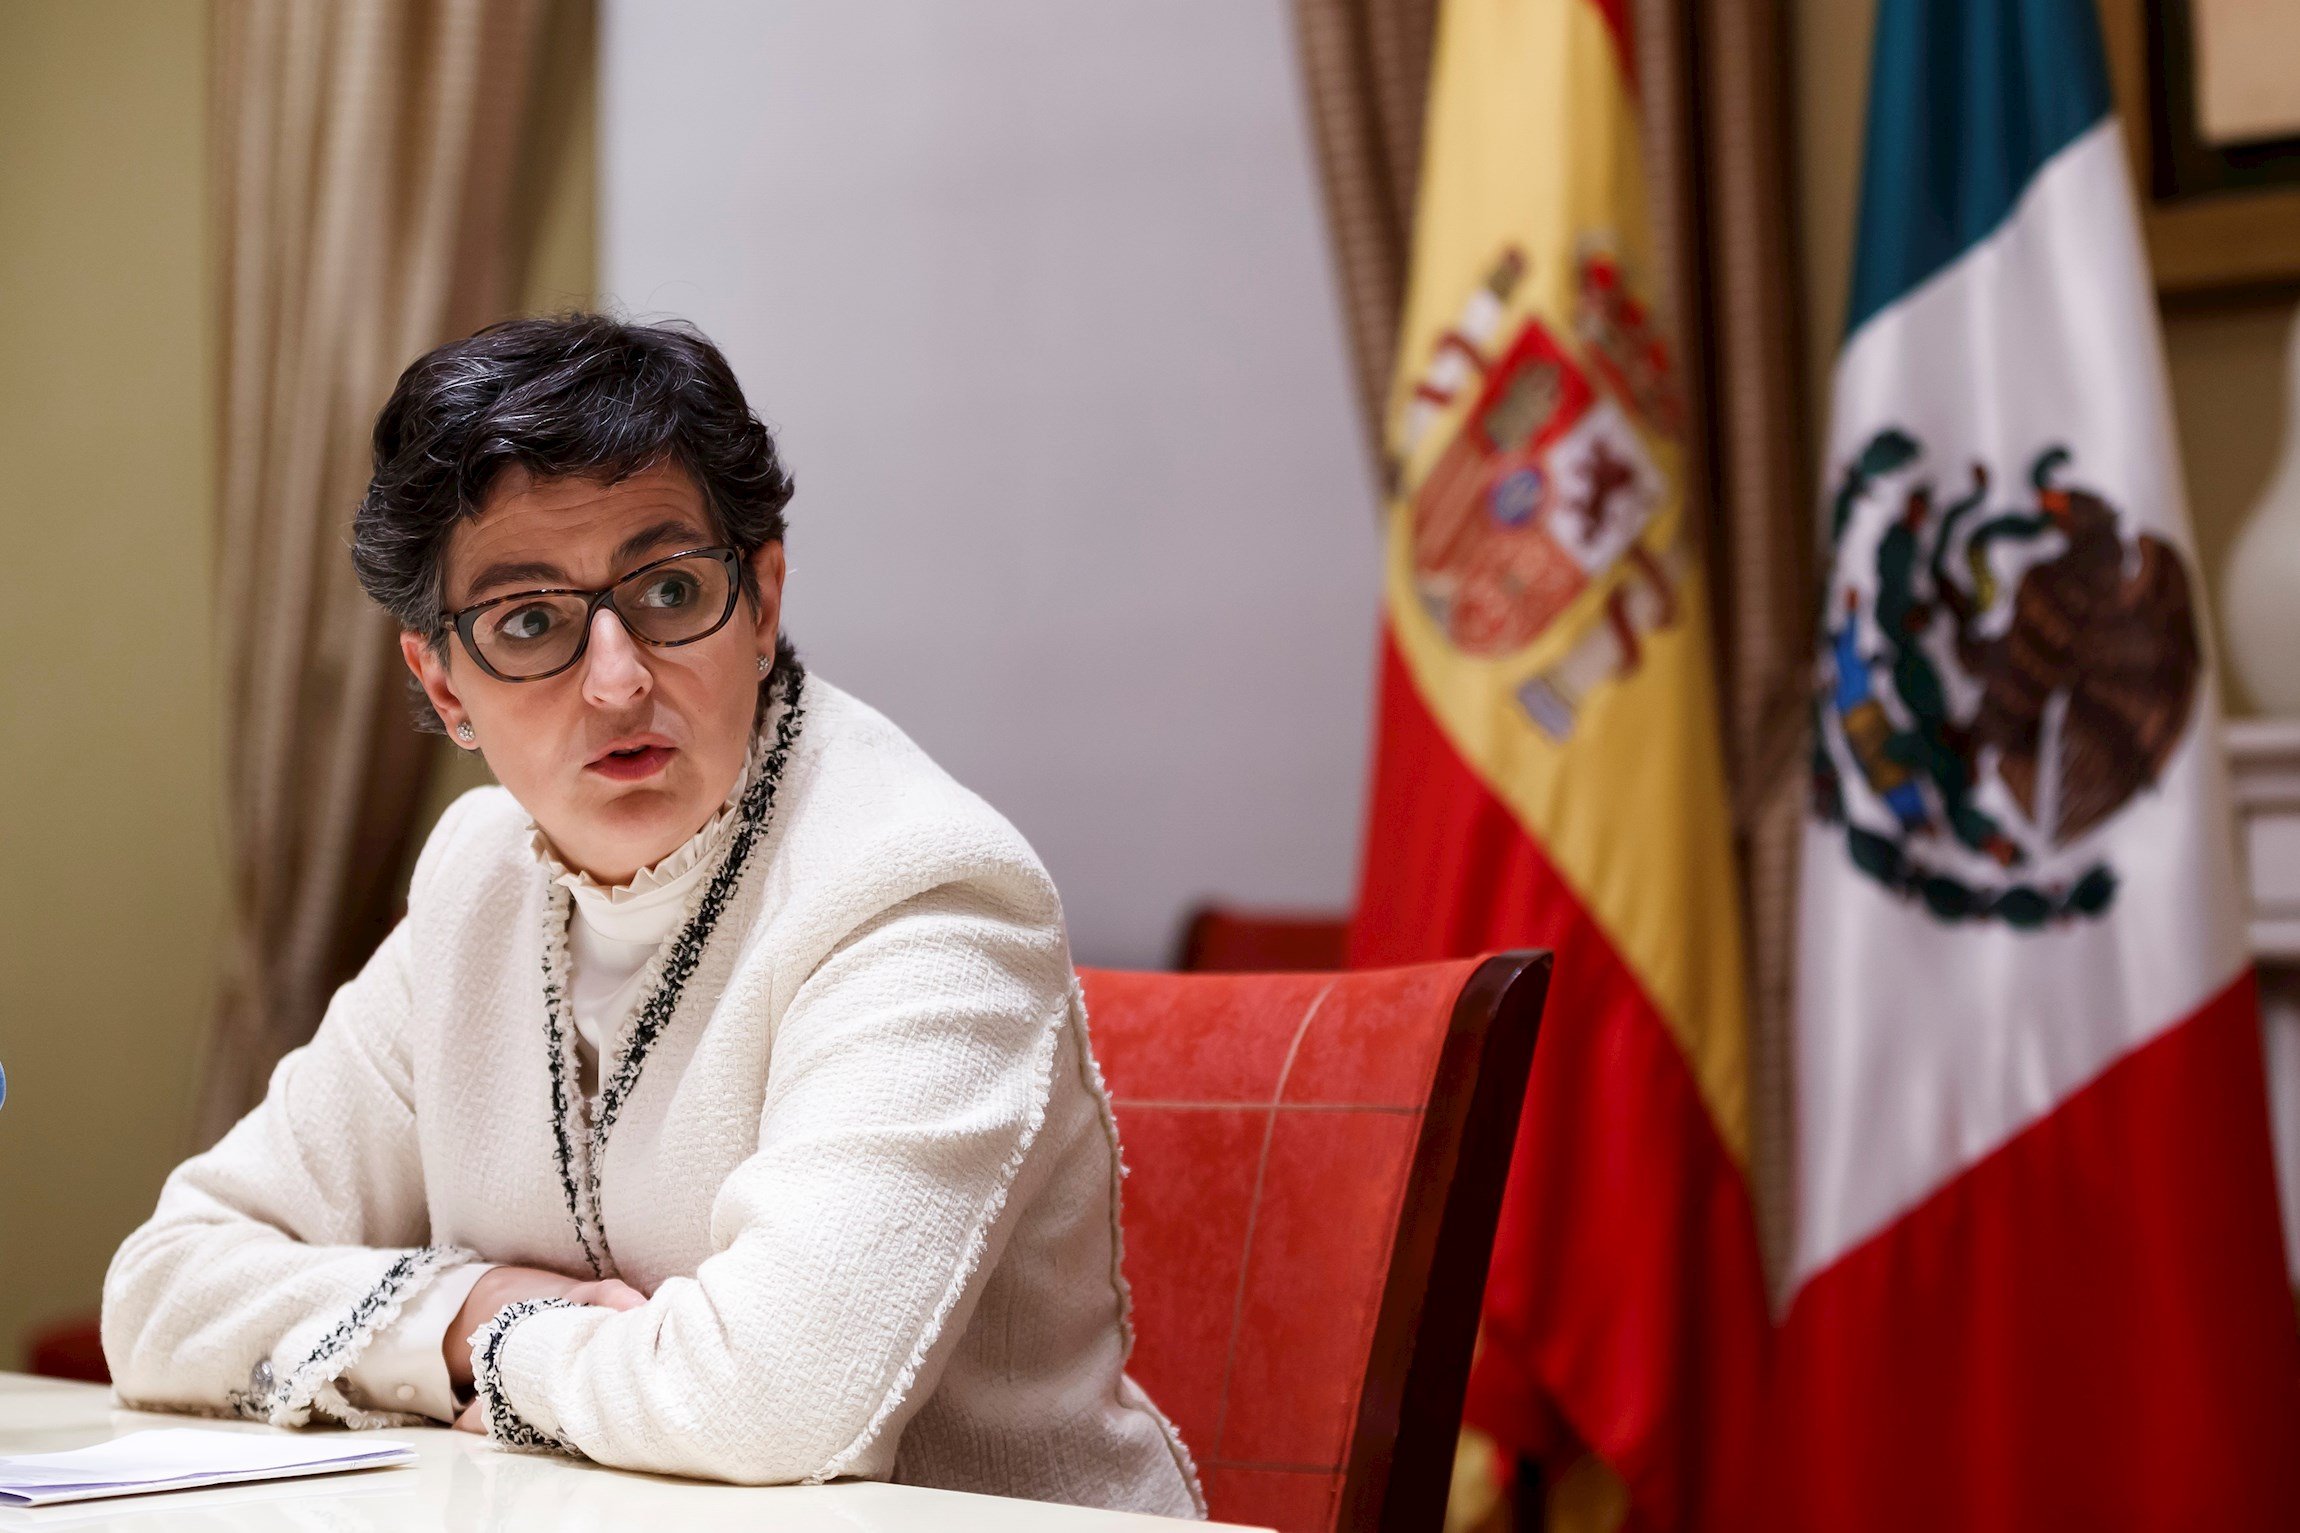 España participará en el bicentenario de México pero no plantea disculparse